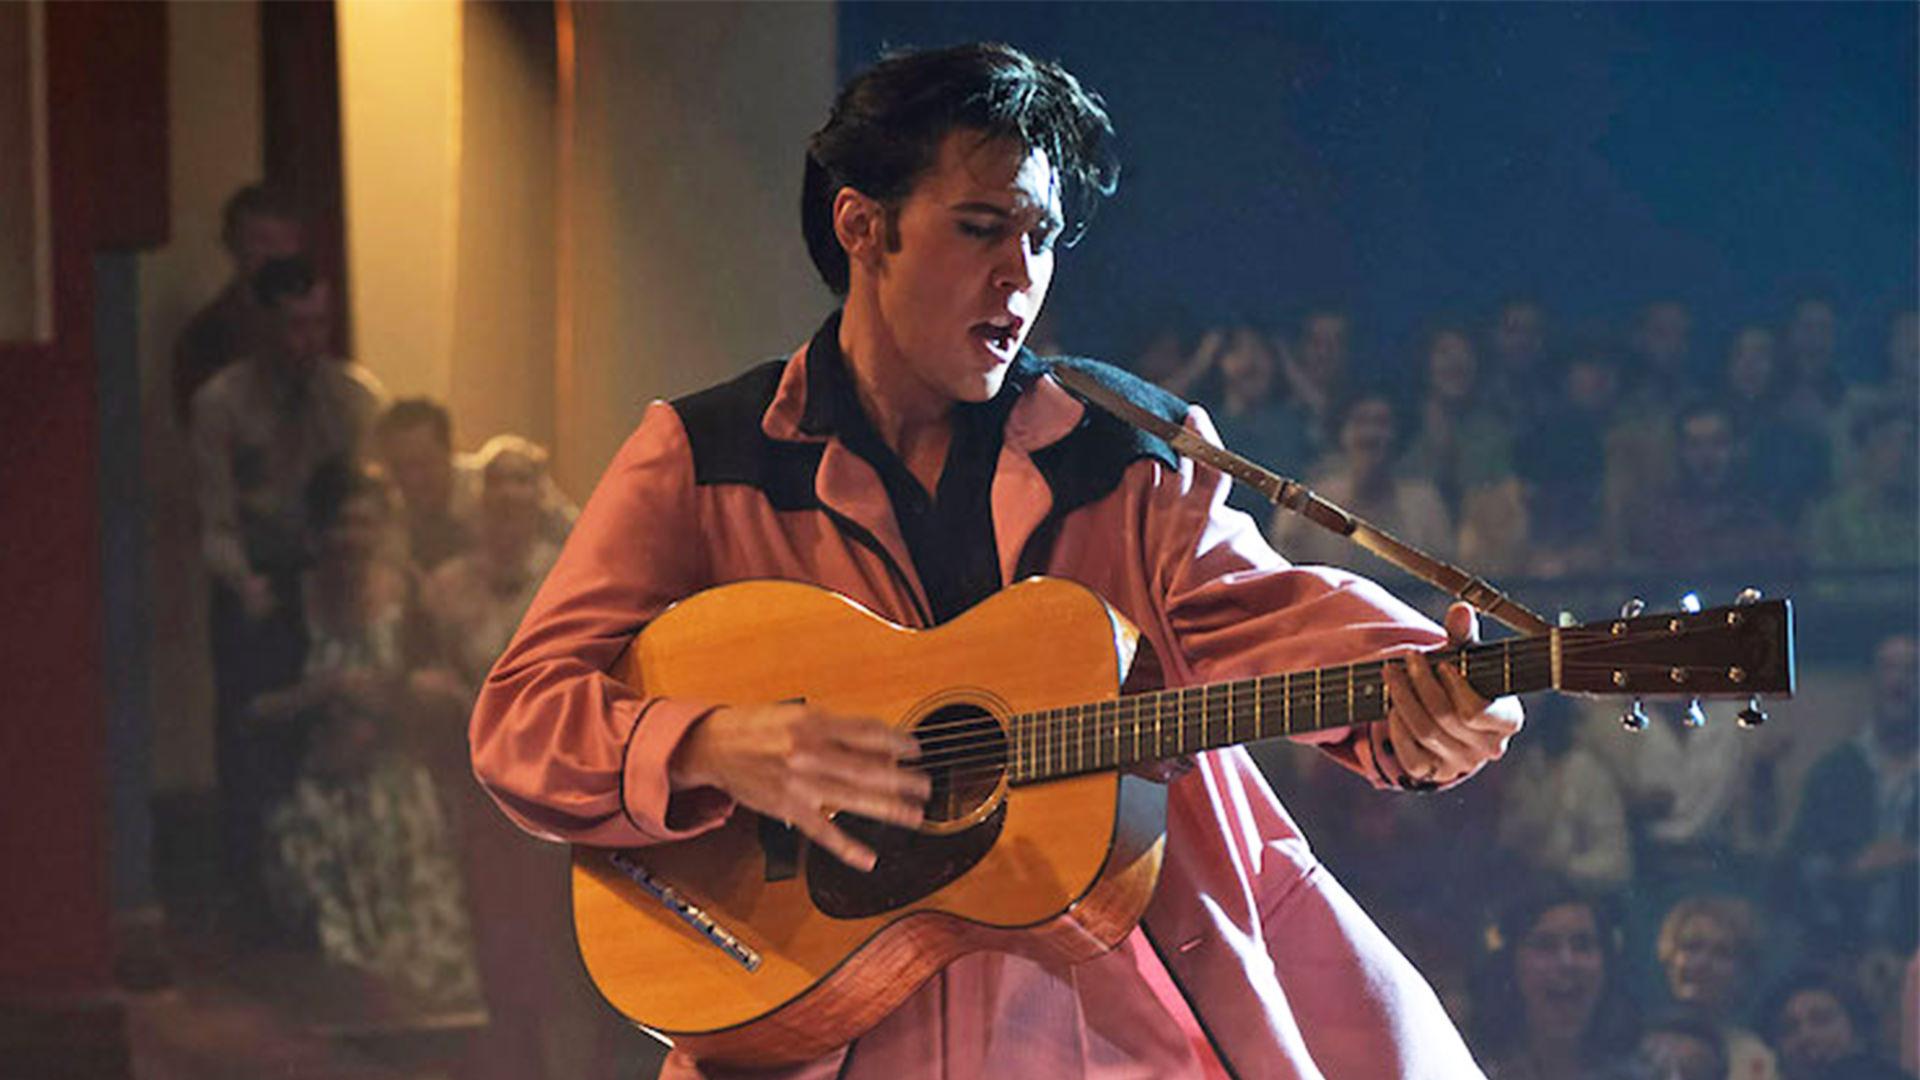 آستین باتلر در نقش الویس پرسلی در فیلم بیوگرافی Elvis